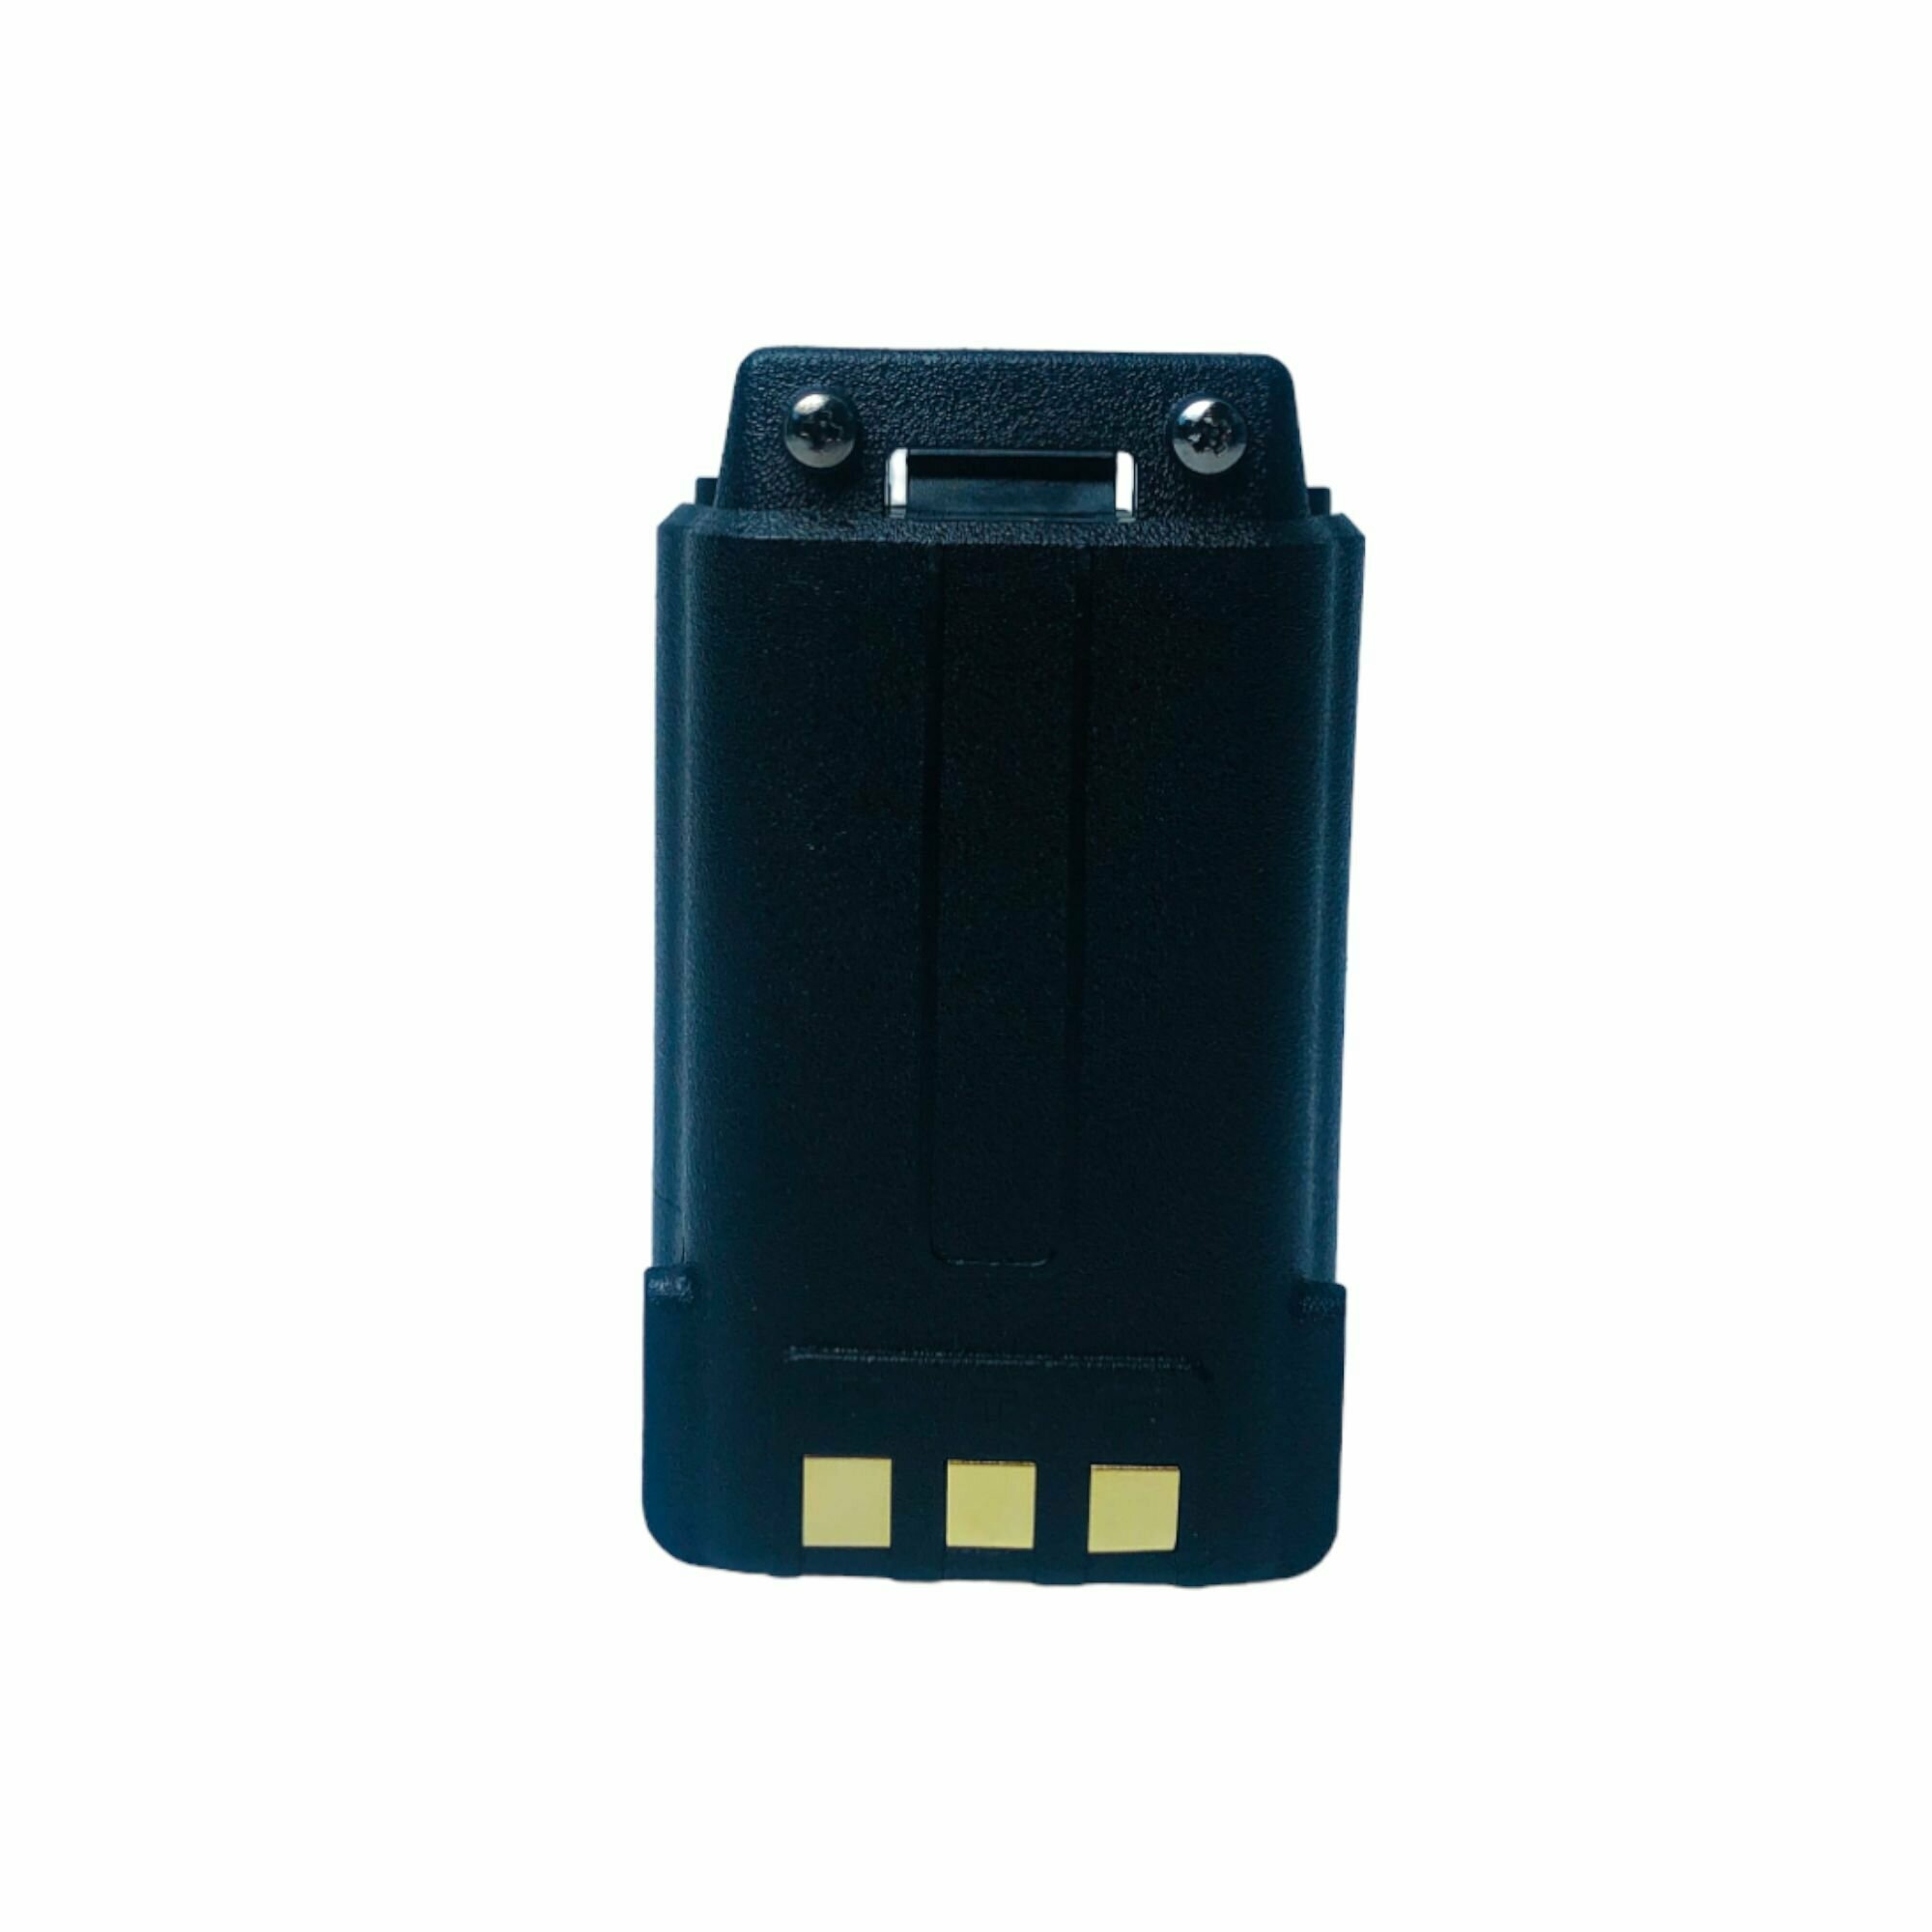 Аккумулятор для рации Baofeng UV-5R увеличенной ёмкости 2500 mAh с TYPE-C JK-5R